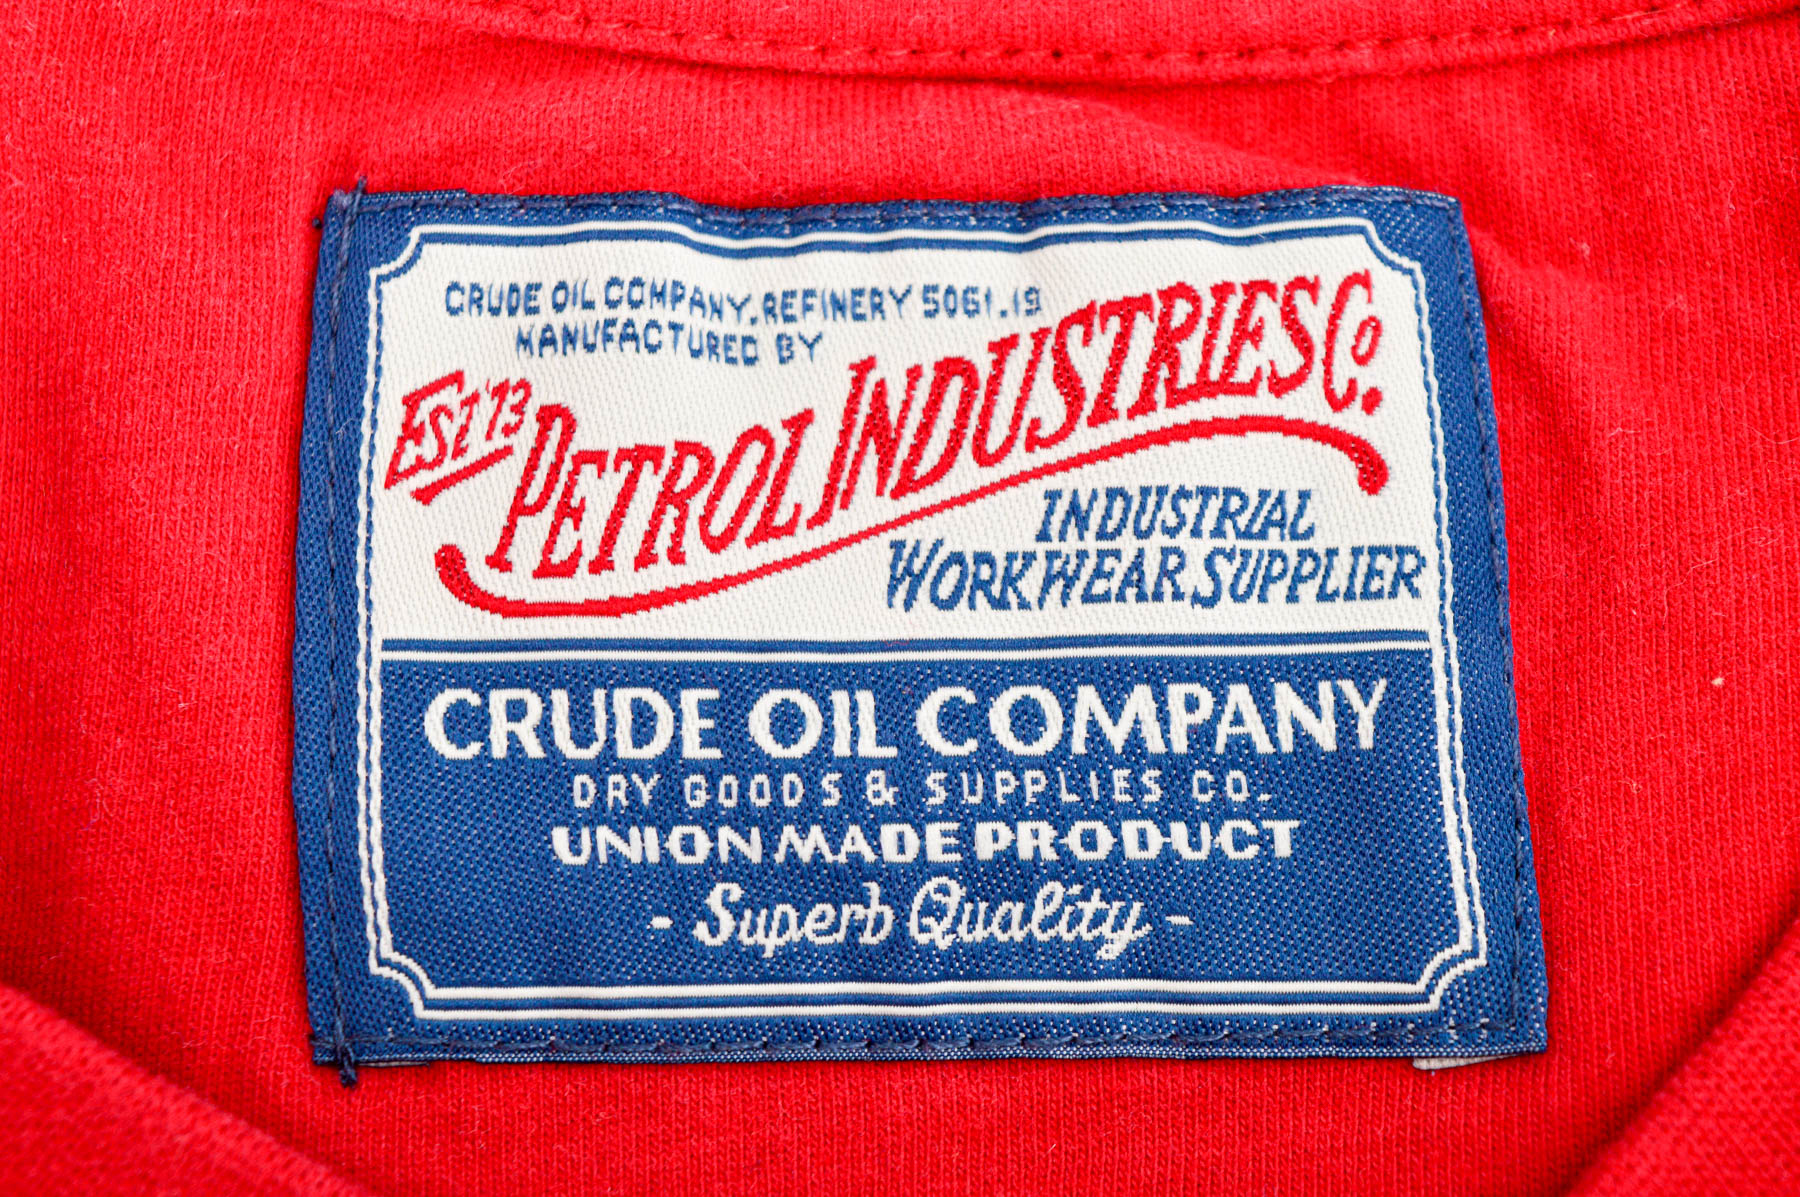 Αντρική μπλούζα - Petrol Industries Co - 2